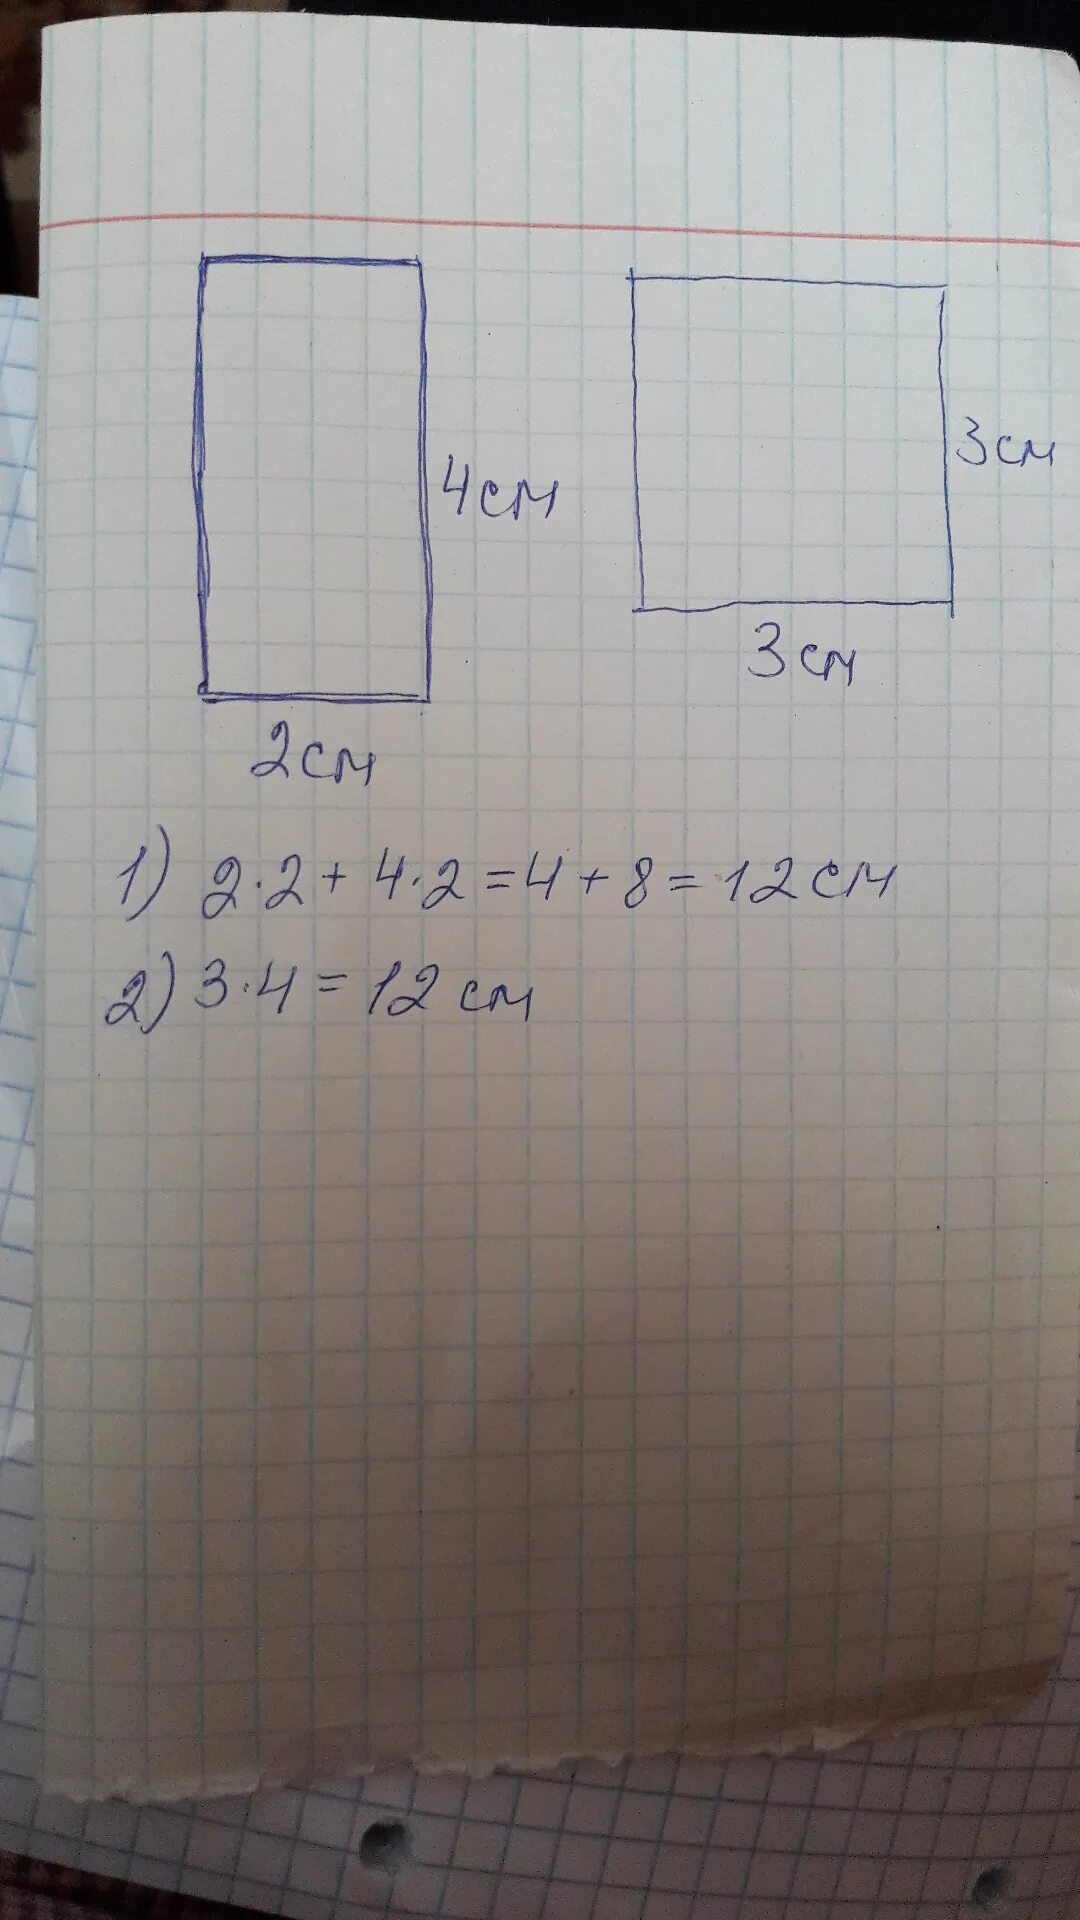 2 одинаковых прямоугольника площадью 18 сантиметров